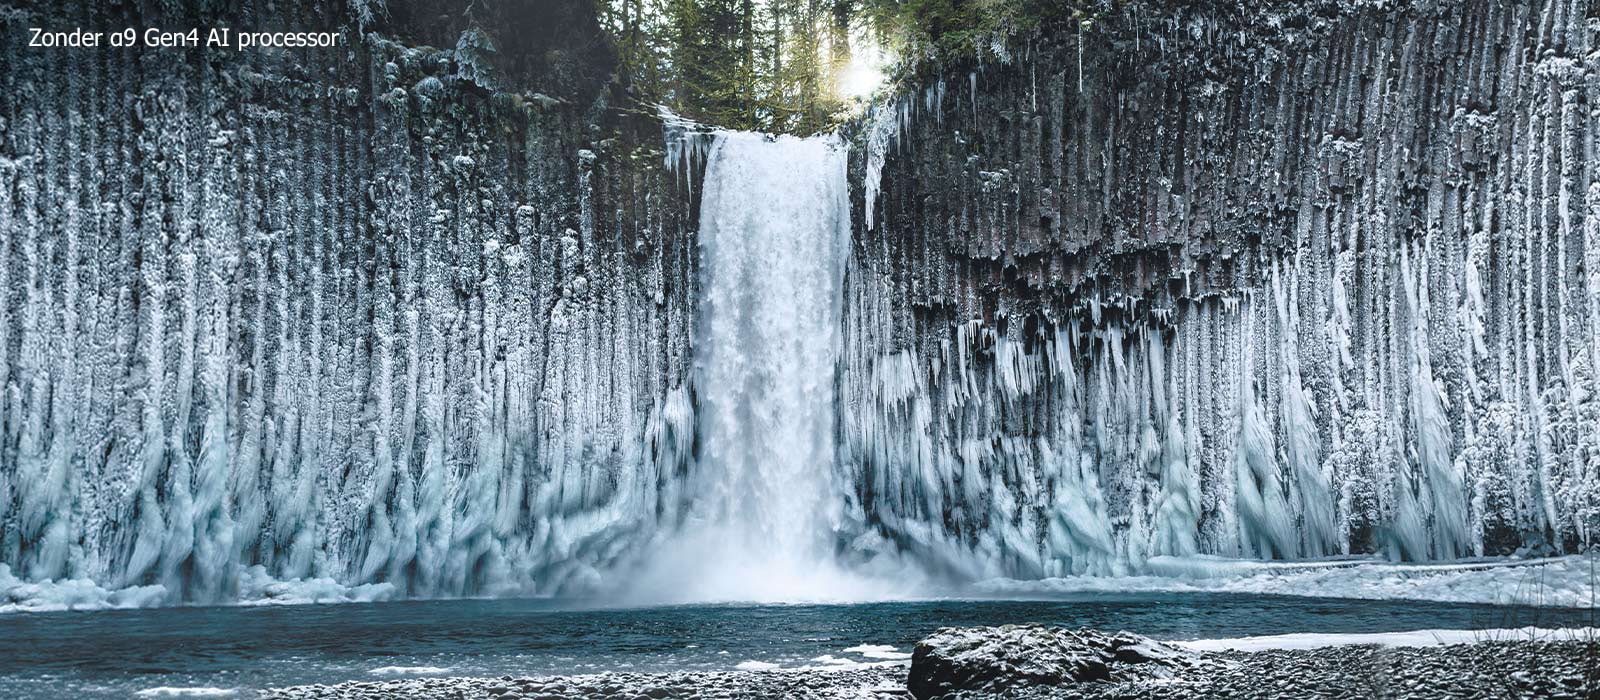 Schuifvergelijking van de beeldkwaliteit van een bevroren waterval in een bos.